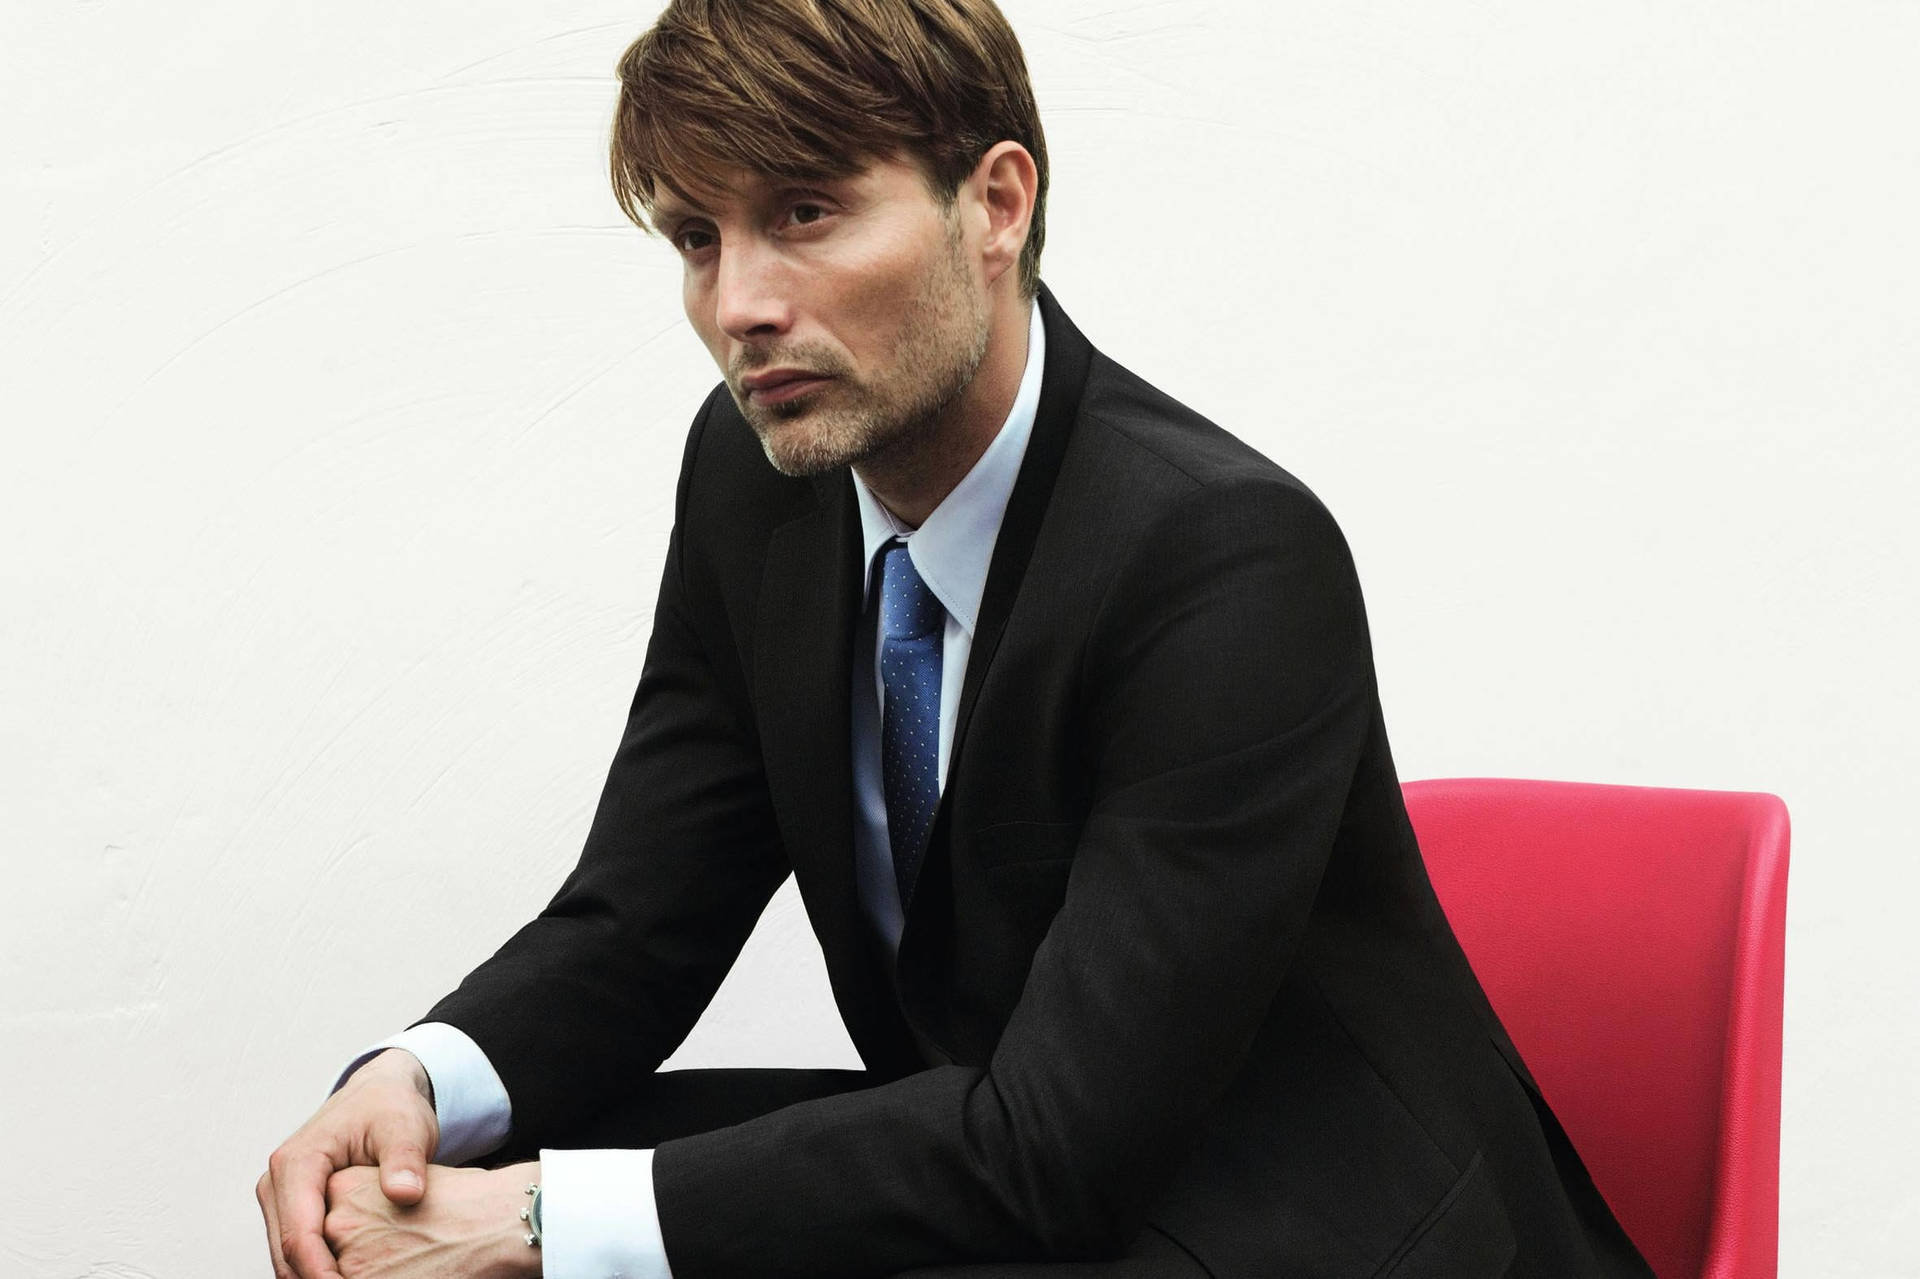 Handsome Mads Mikkelsen In Suit Background